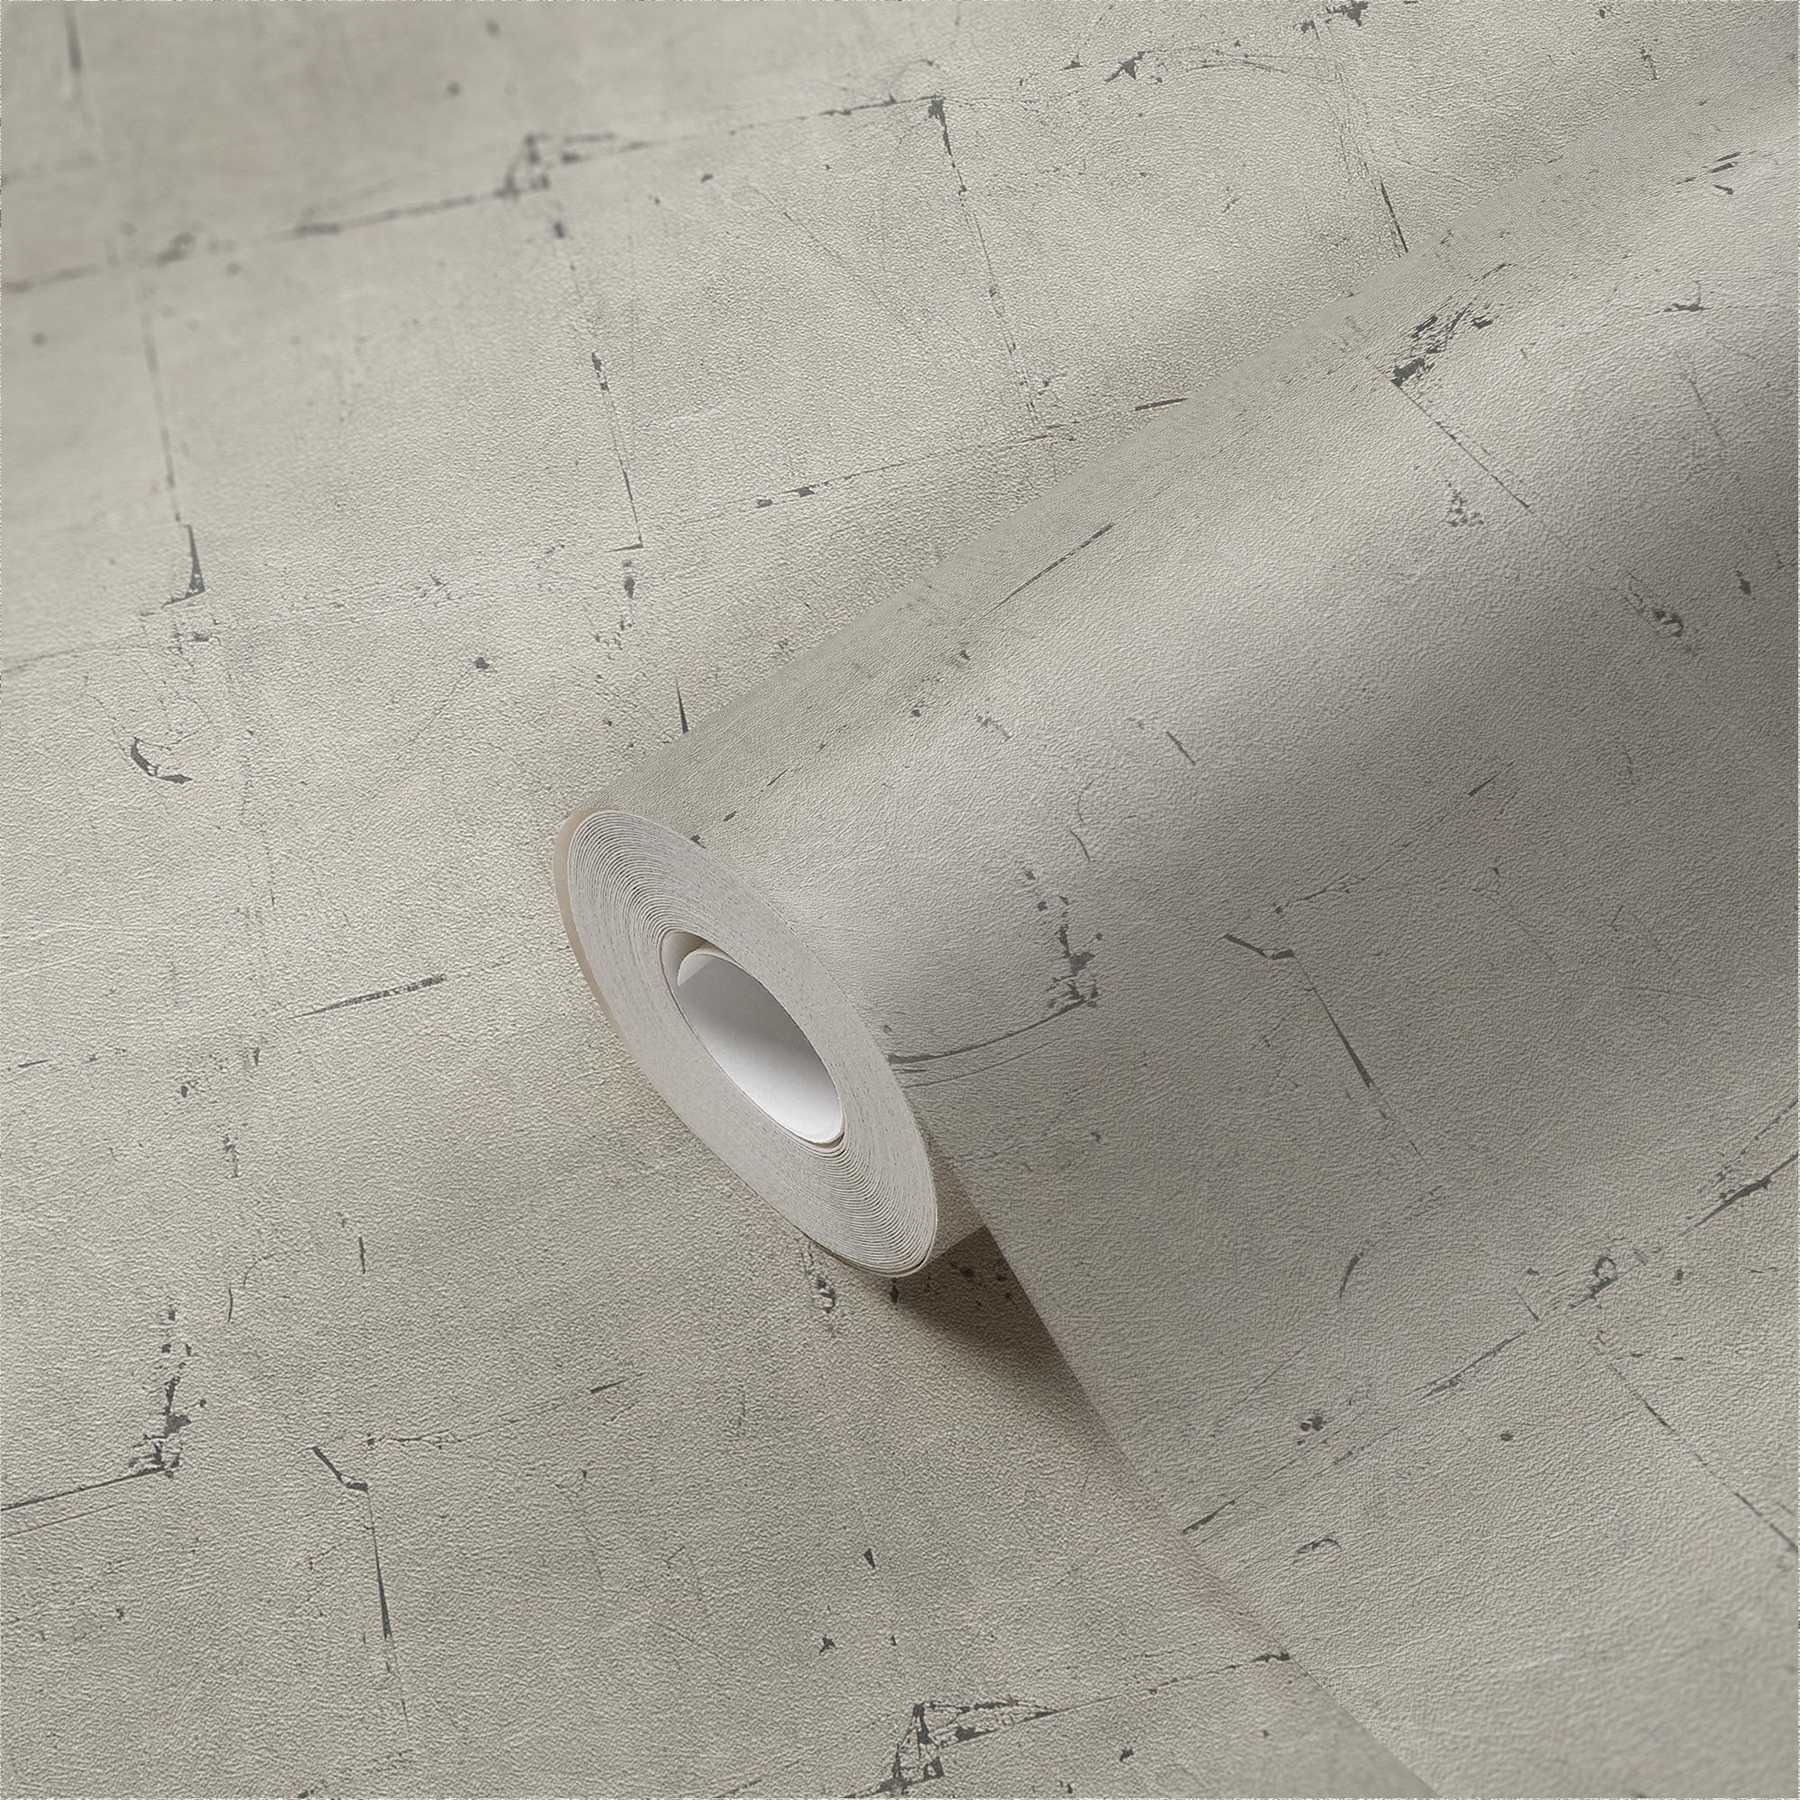             Papier peint imitation pierre avec motifs structurés - gris, beige
        